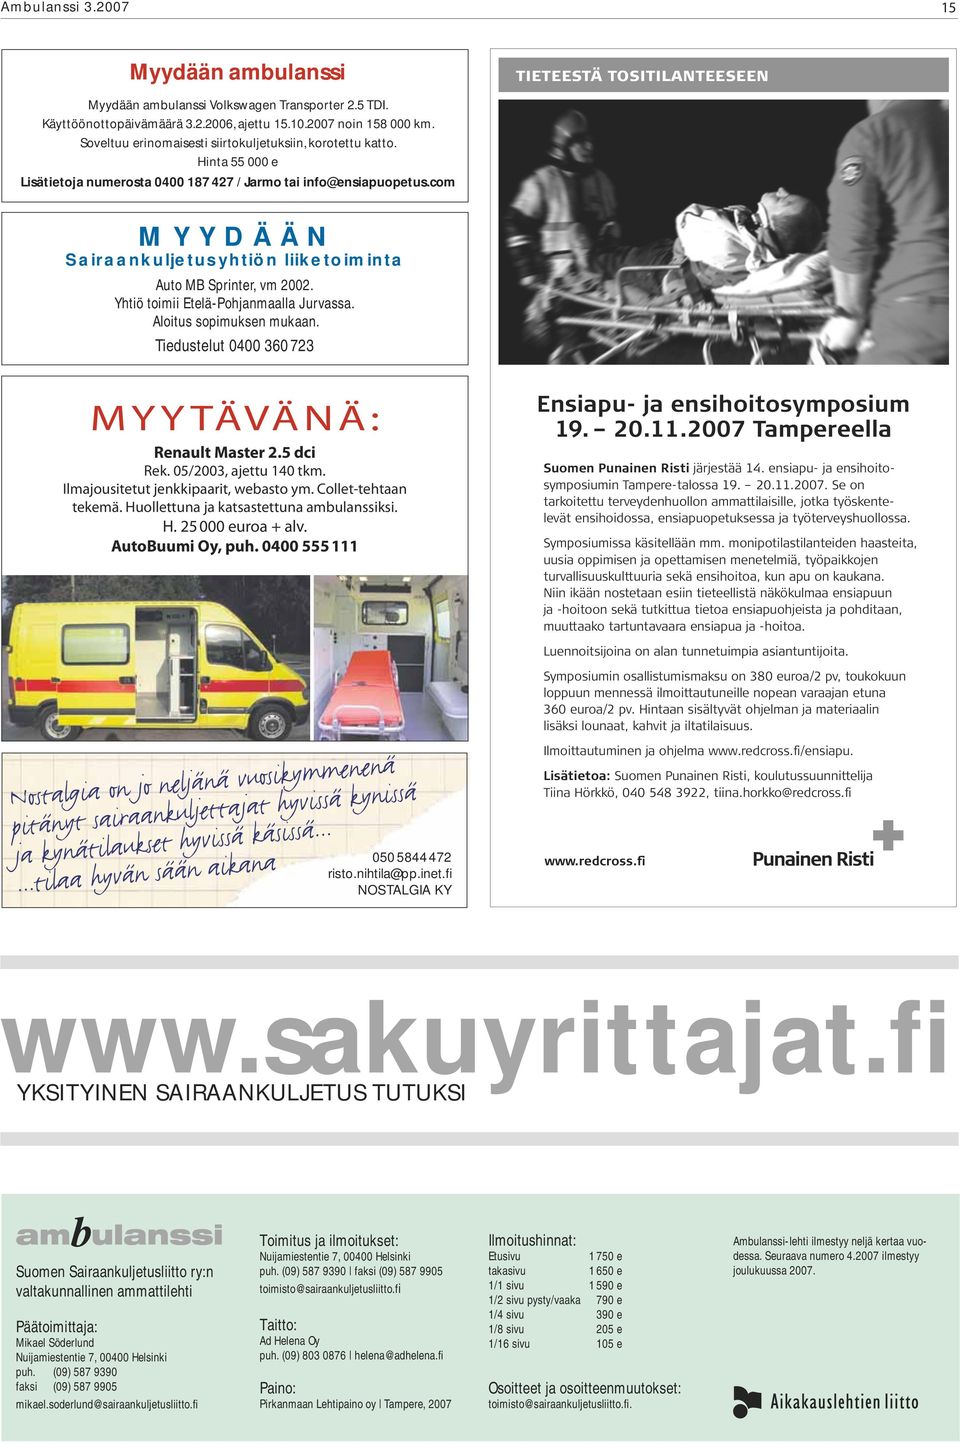 com MYYDÄÄN Sairaankuljetusyhtiön liiketoiminta Auto MB Sprinter, vm 2002. Yhtiö toimii Etelä-Pohjanmaalla Jurvassa. Aloitus sopimuksen mukaan. Tiedustelut 0400 360 723 MYYTÄVÄNÄ: Renault Master 2.